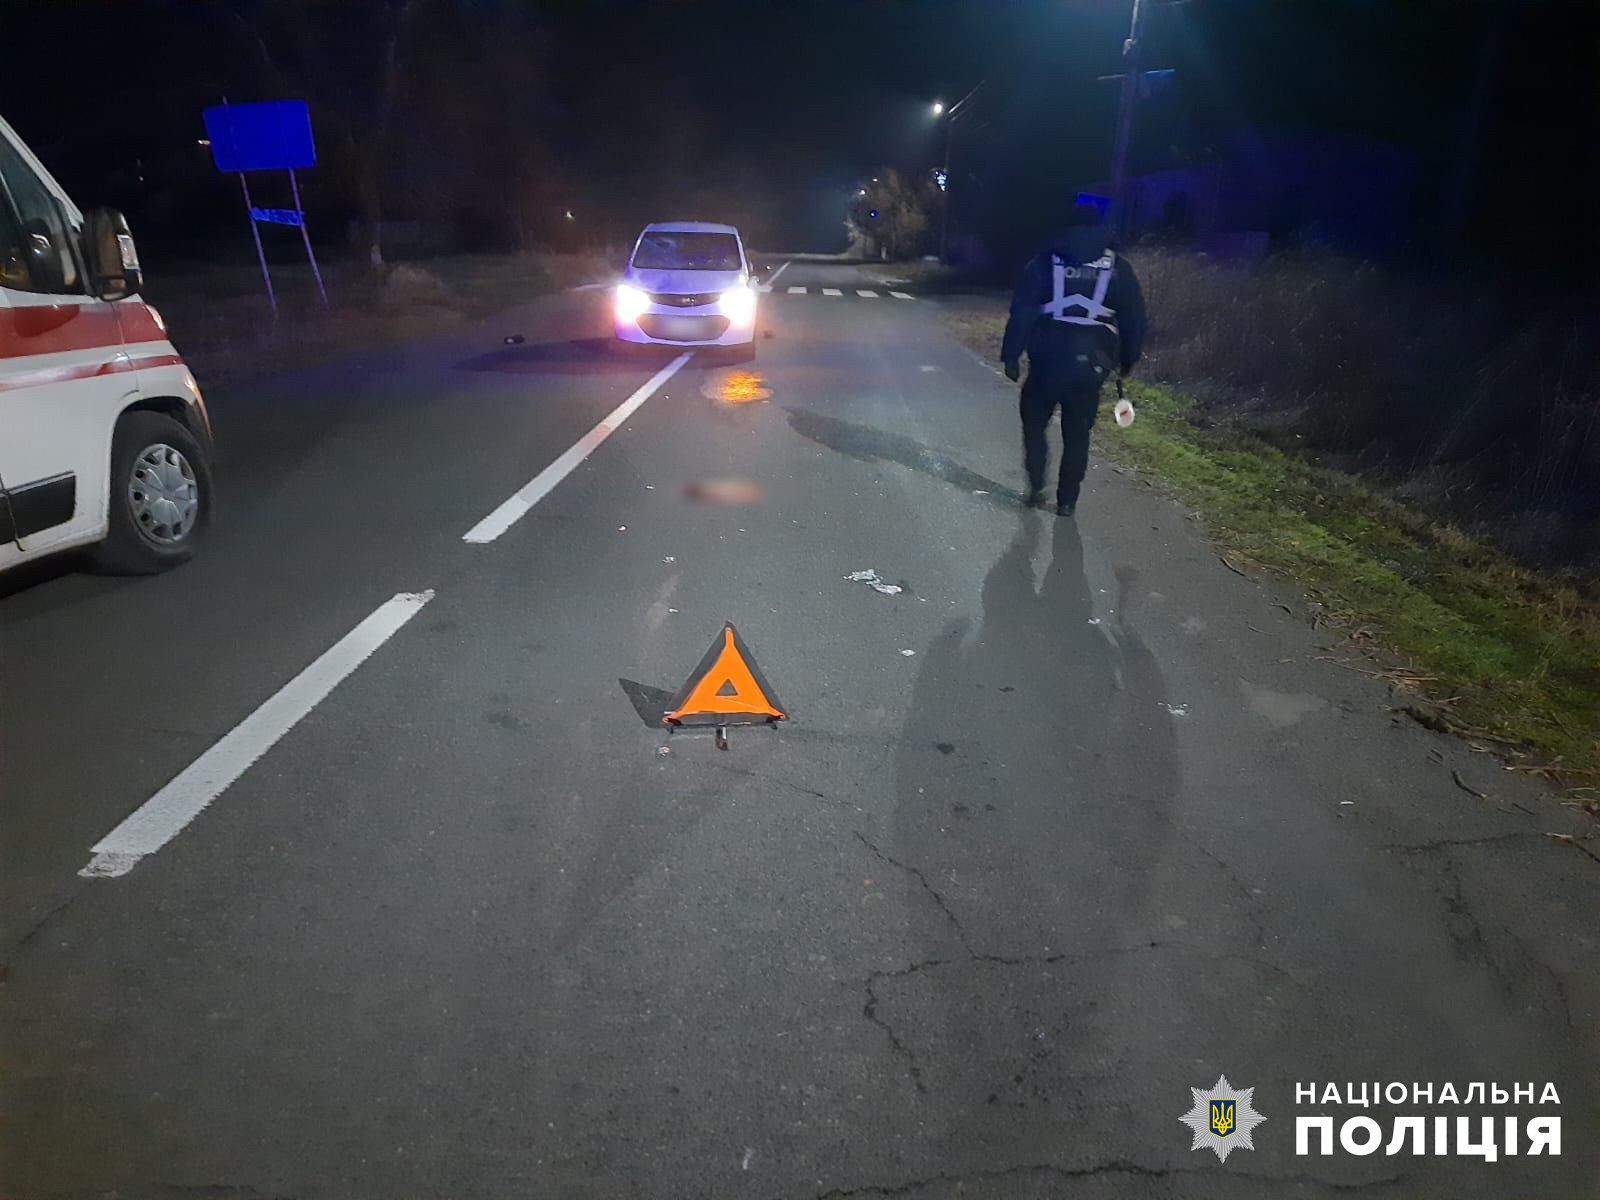 Перебігав дорогу та потрапив під колеса авто: у Білгород-Дністровському районі сталась смертельна ДТП